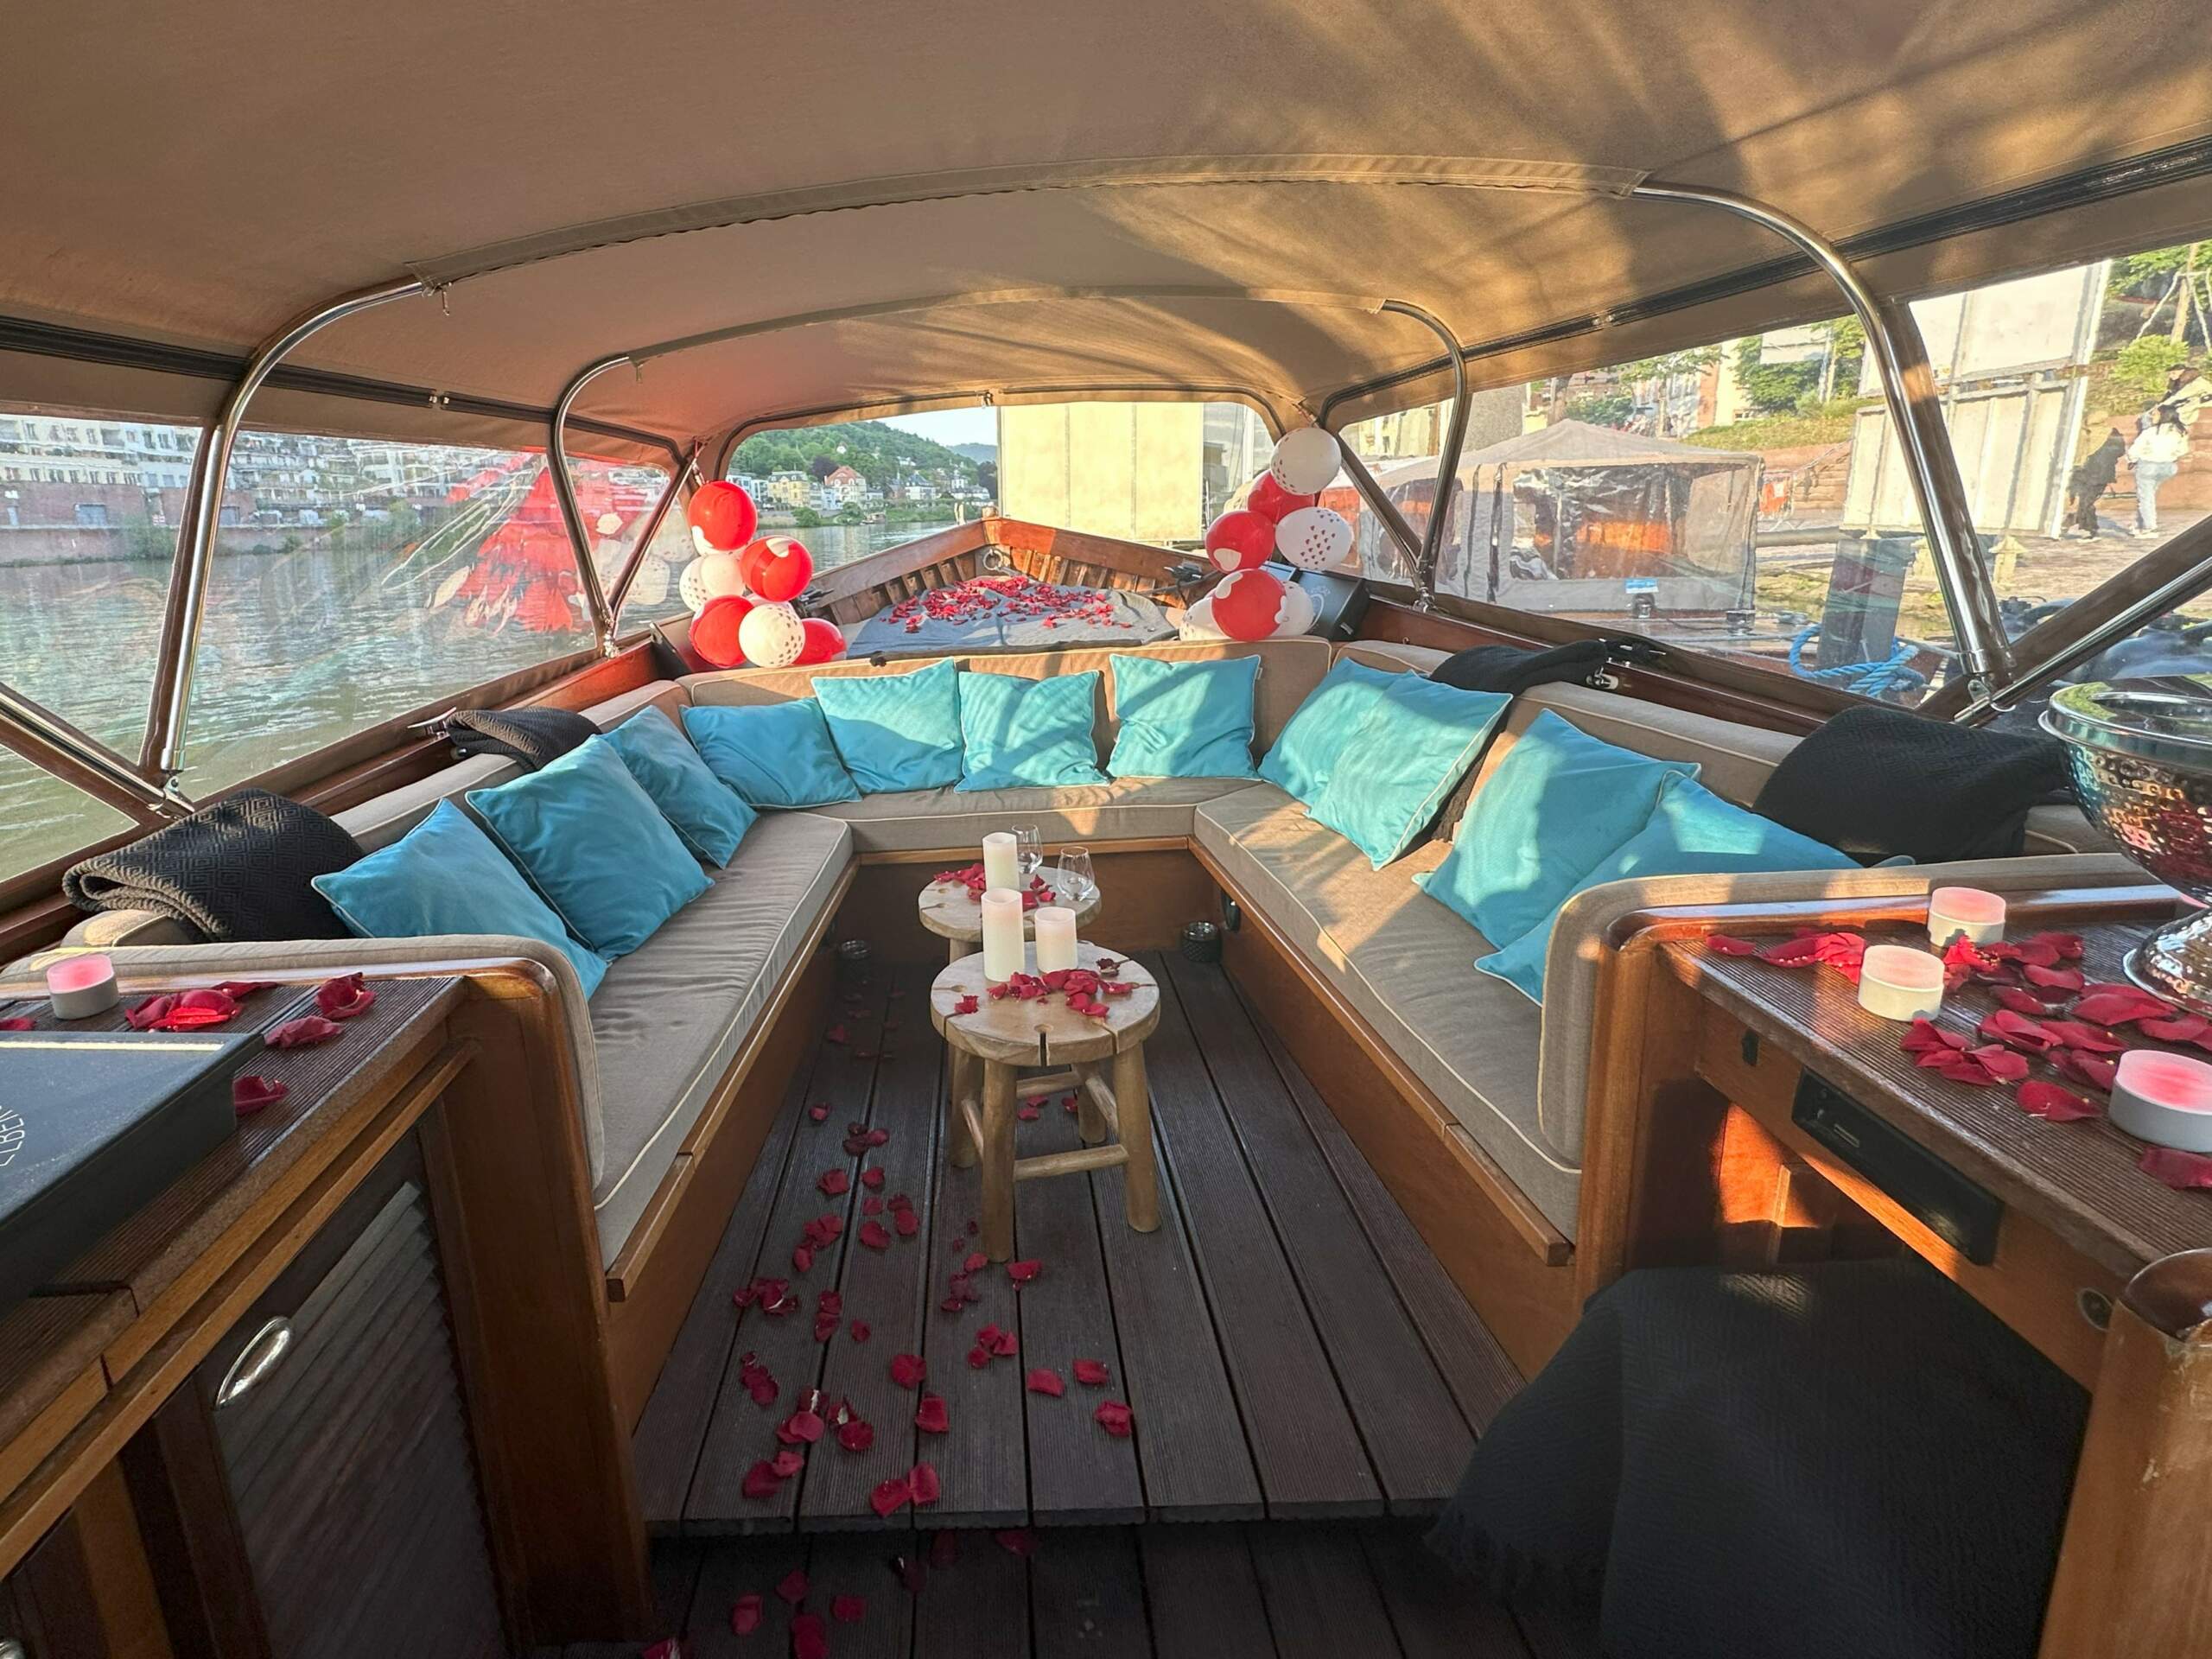 Das Innere des Holzbootes von Riverboat, dekoriert für eine Hochzeit